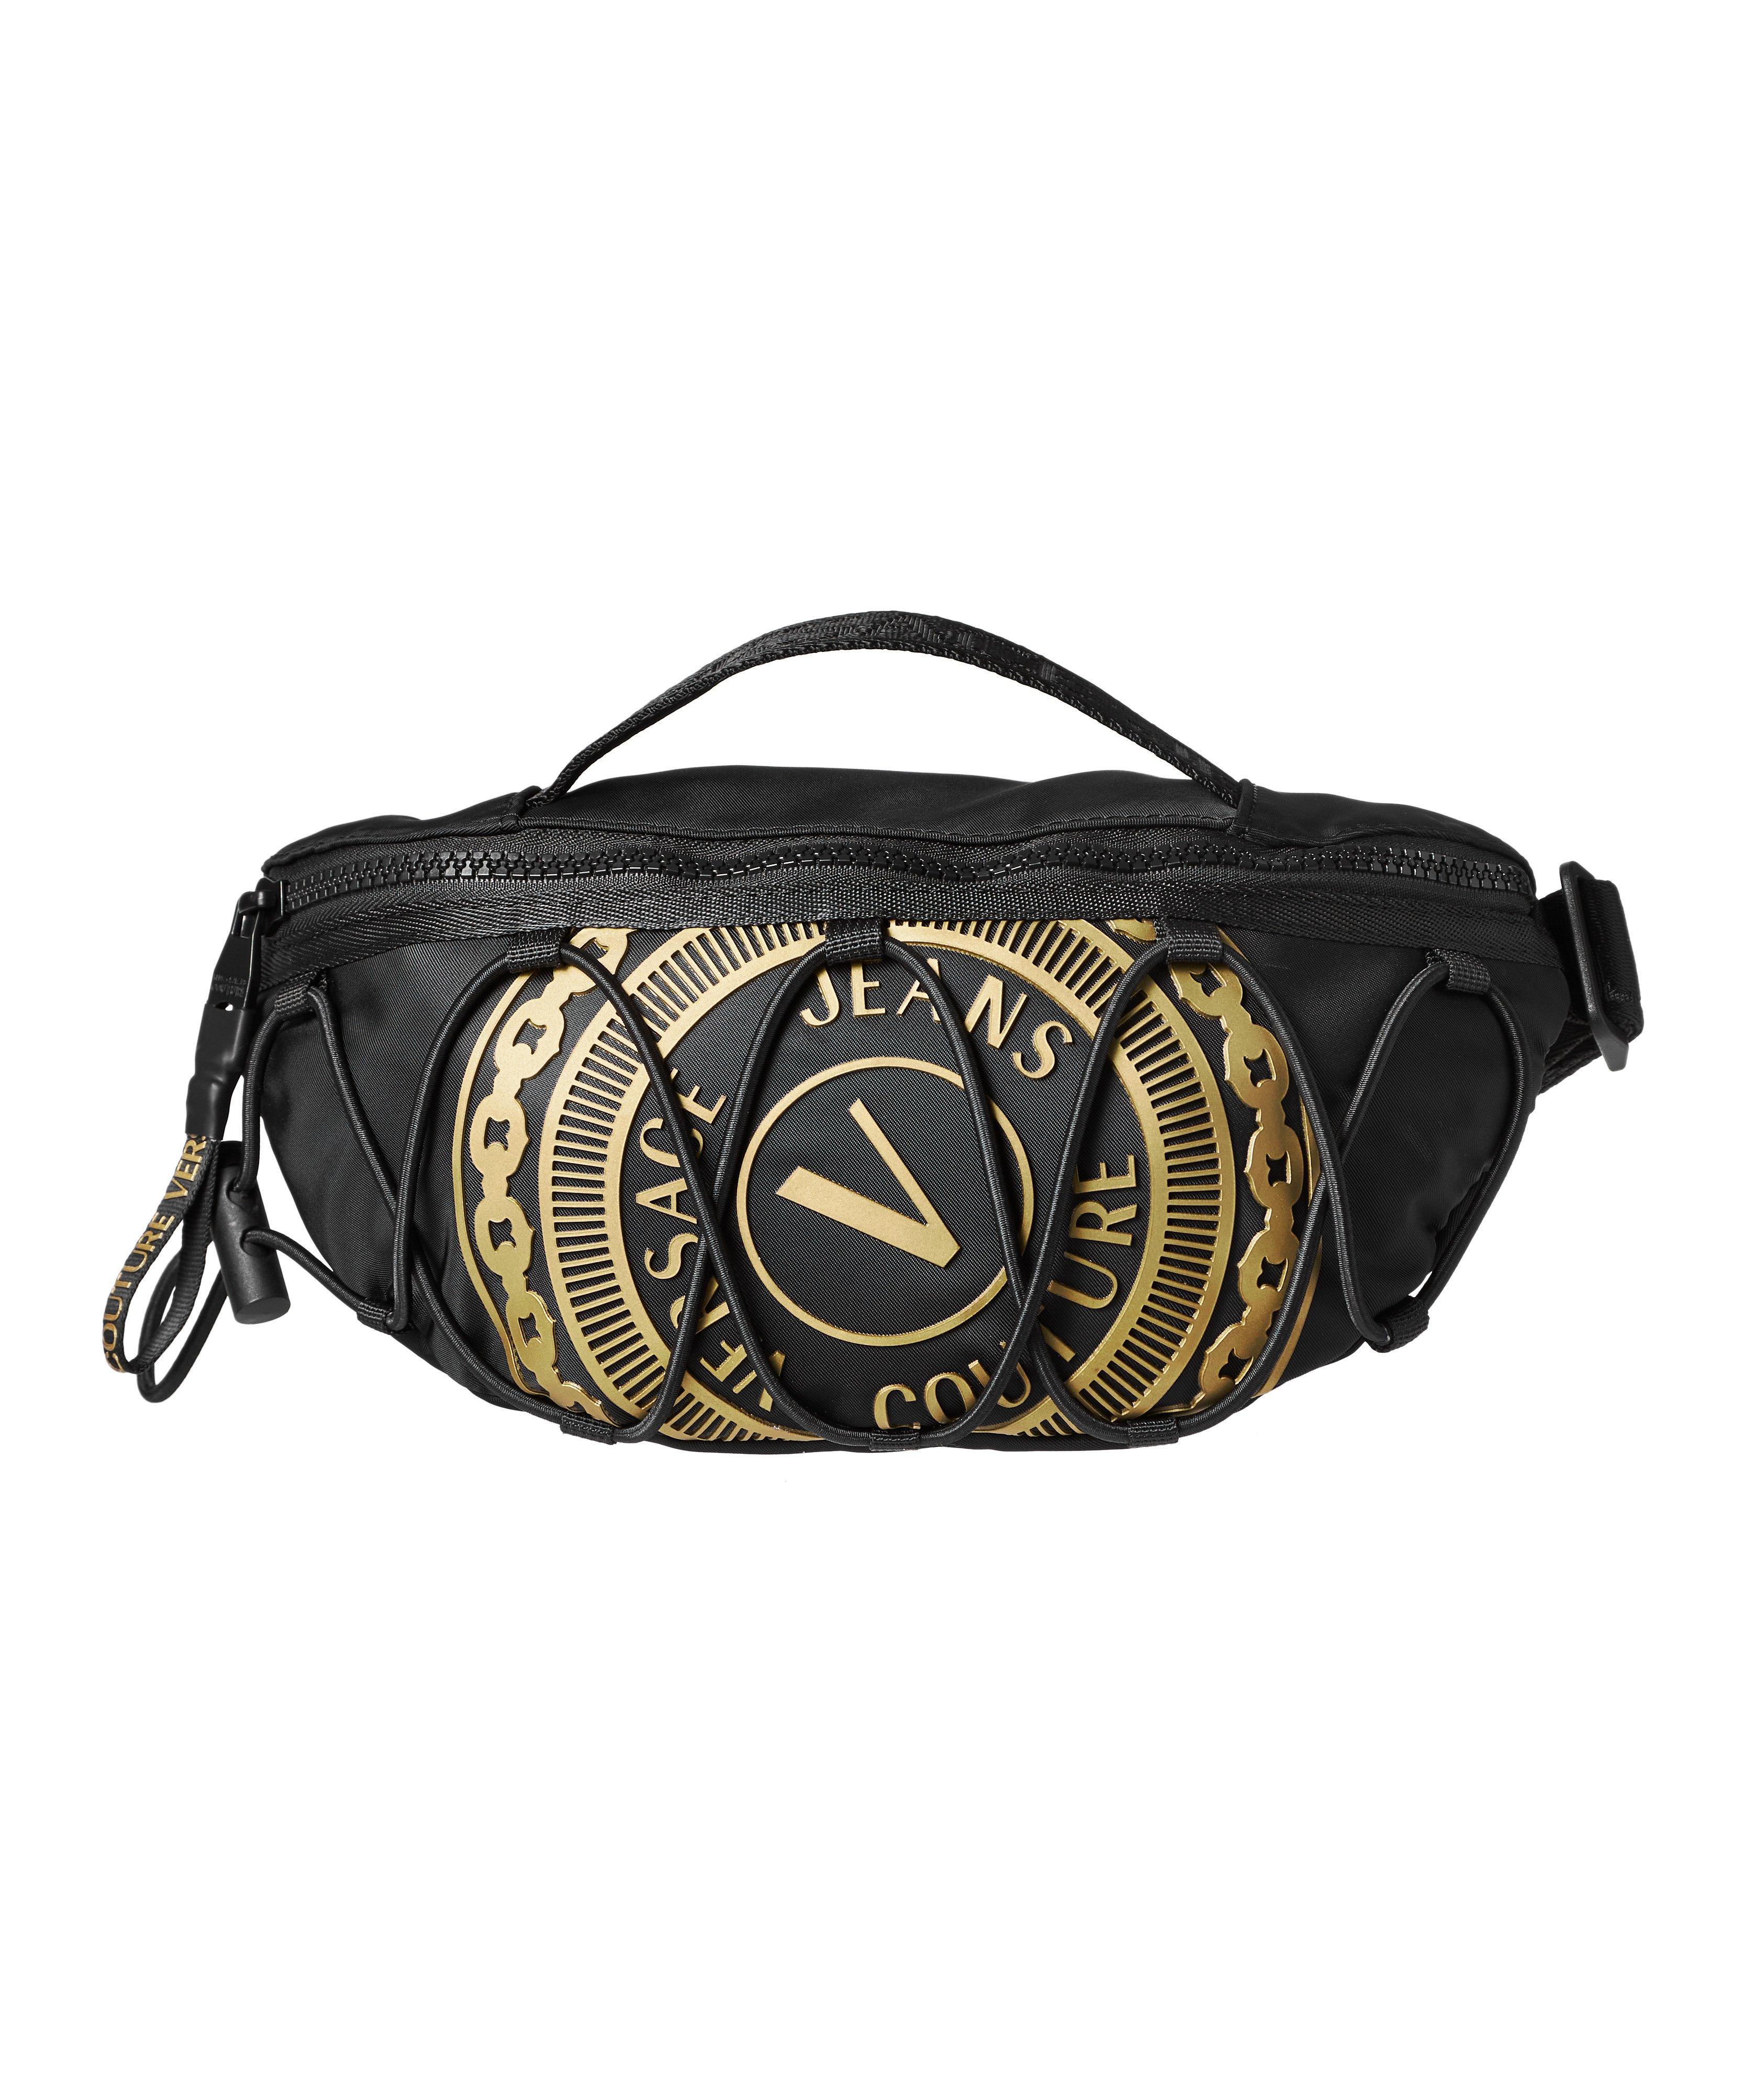 V-Emblem Belt Bag image 0